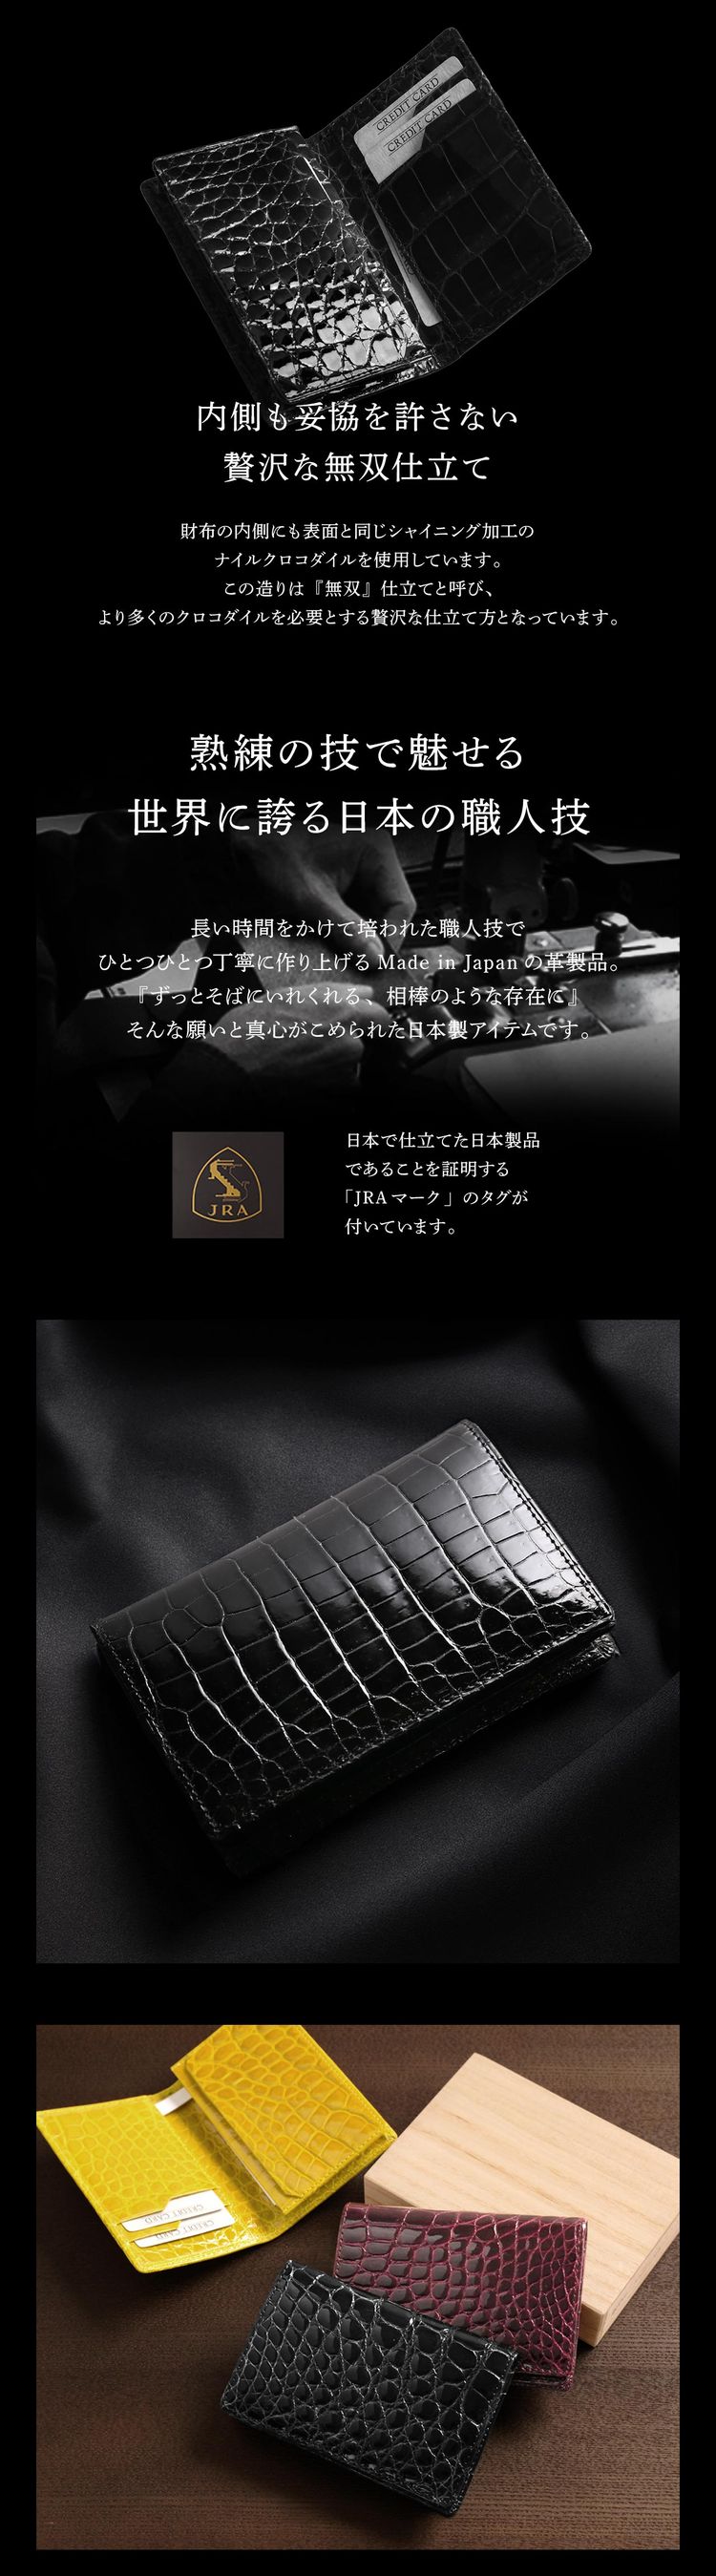 名刺入れ クロコダイル 日本製 カードケース メンズ シャイニング 加工 光沢 ビジネス